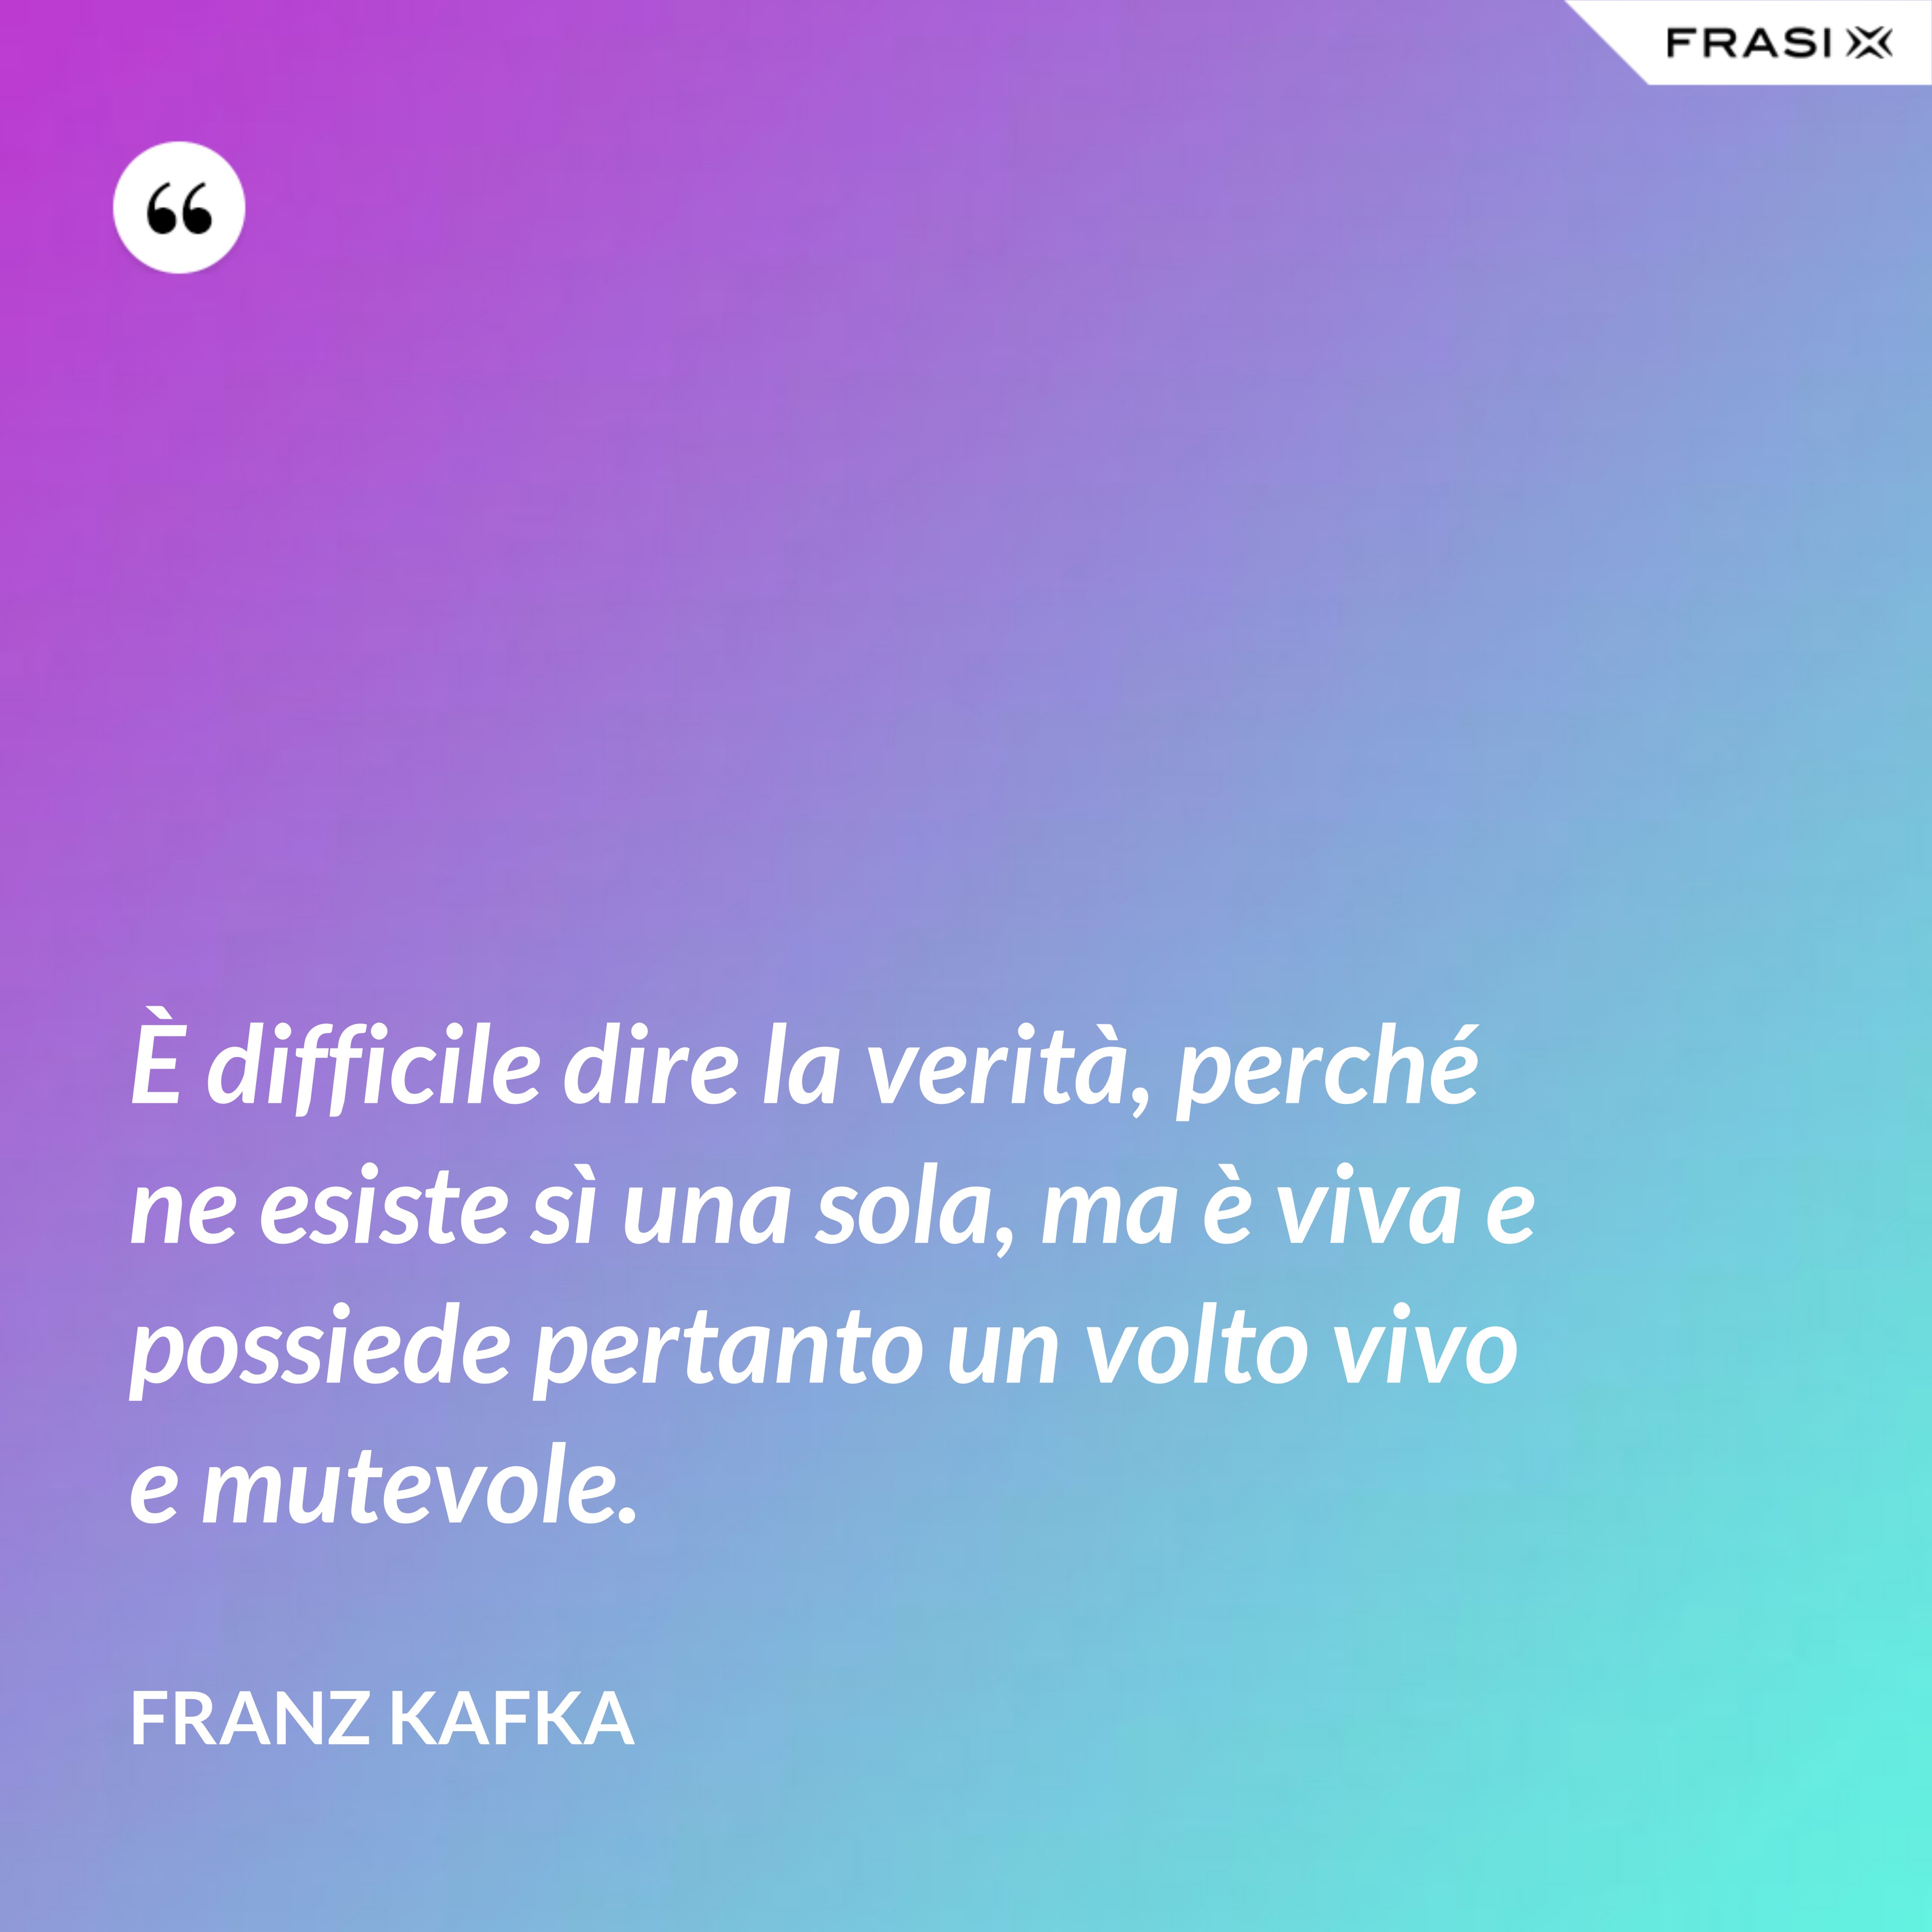 È difficile dire la verità, perché ne esiste sì una sola, ma è viva e possiede pertanto un volto vivo e mutevole. - Franz Kafka